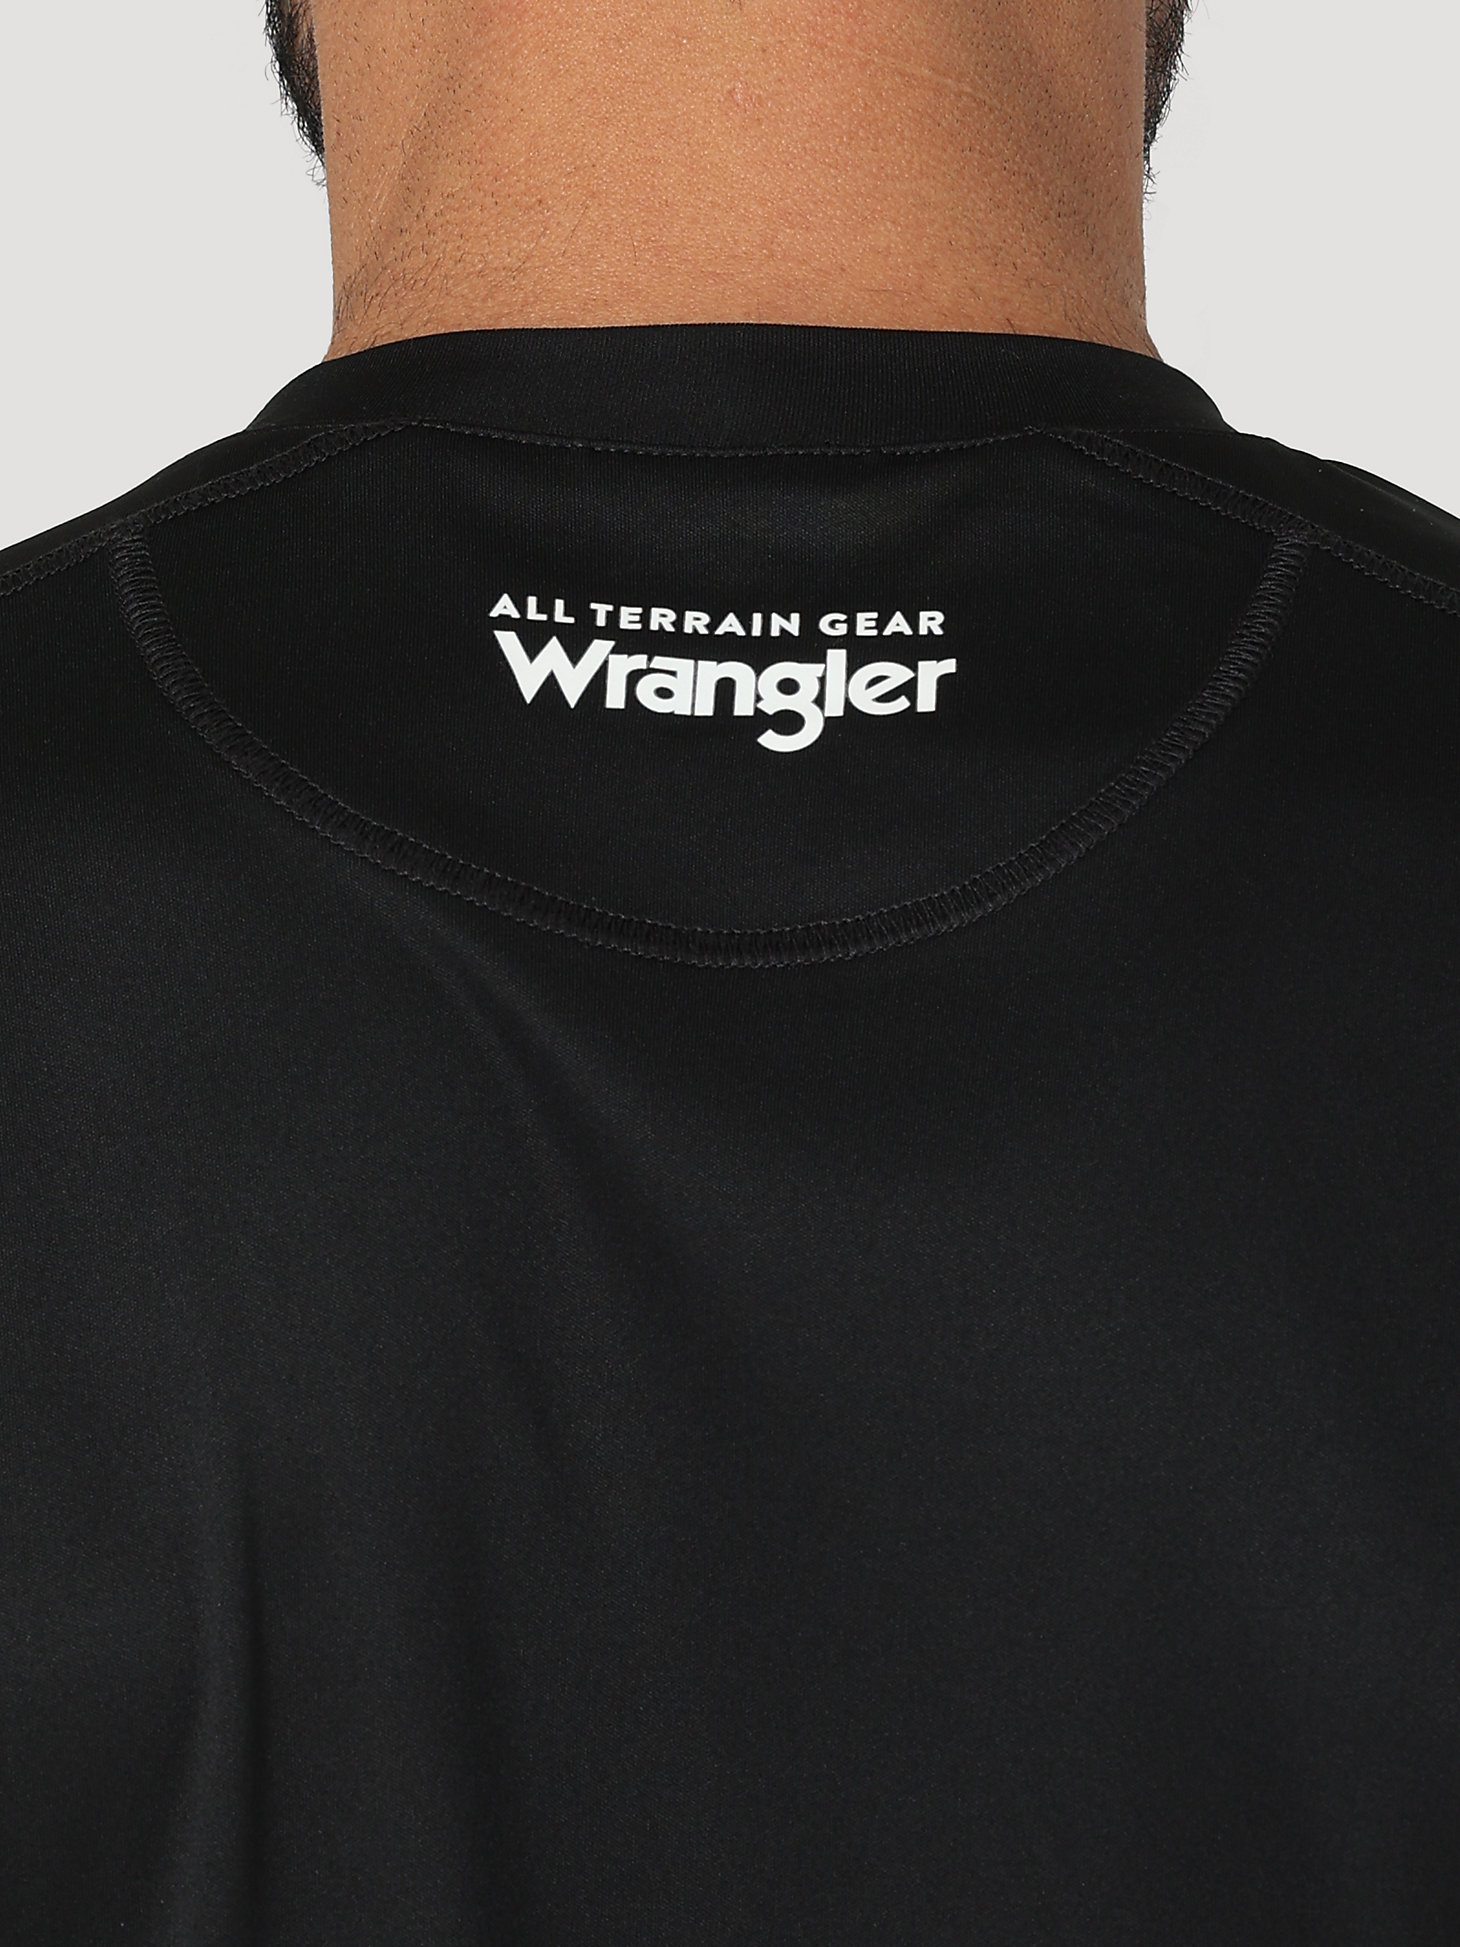 ATG Wrangler Angler™ Men's Performance Shirt in Jet Black alternative view 4